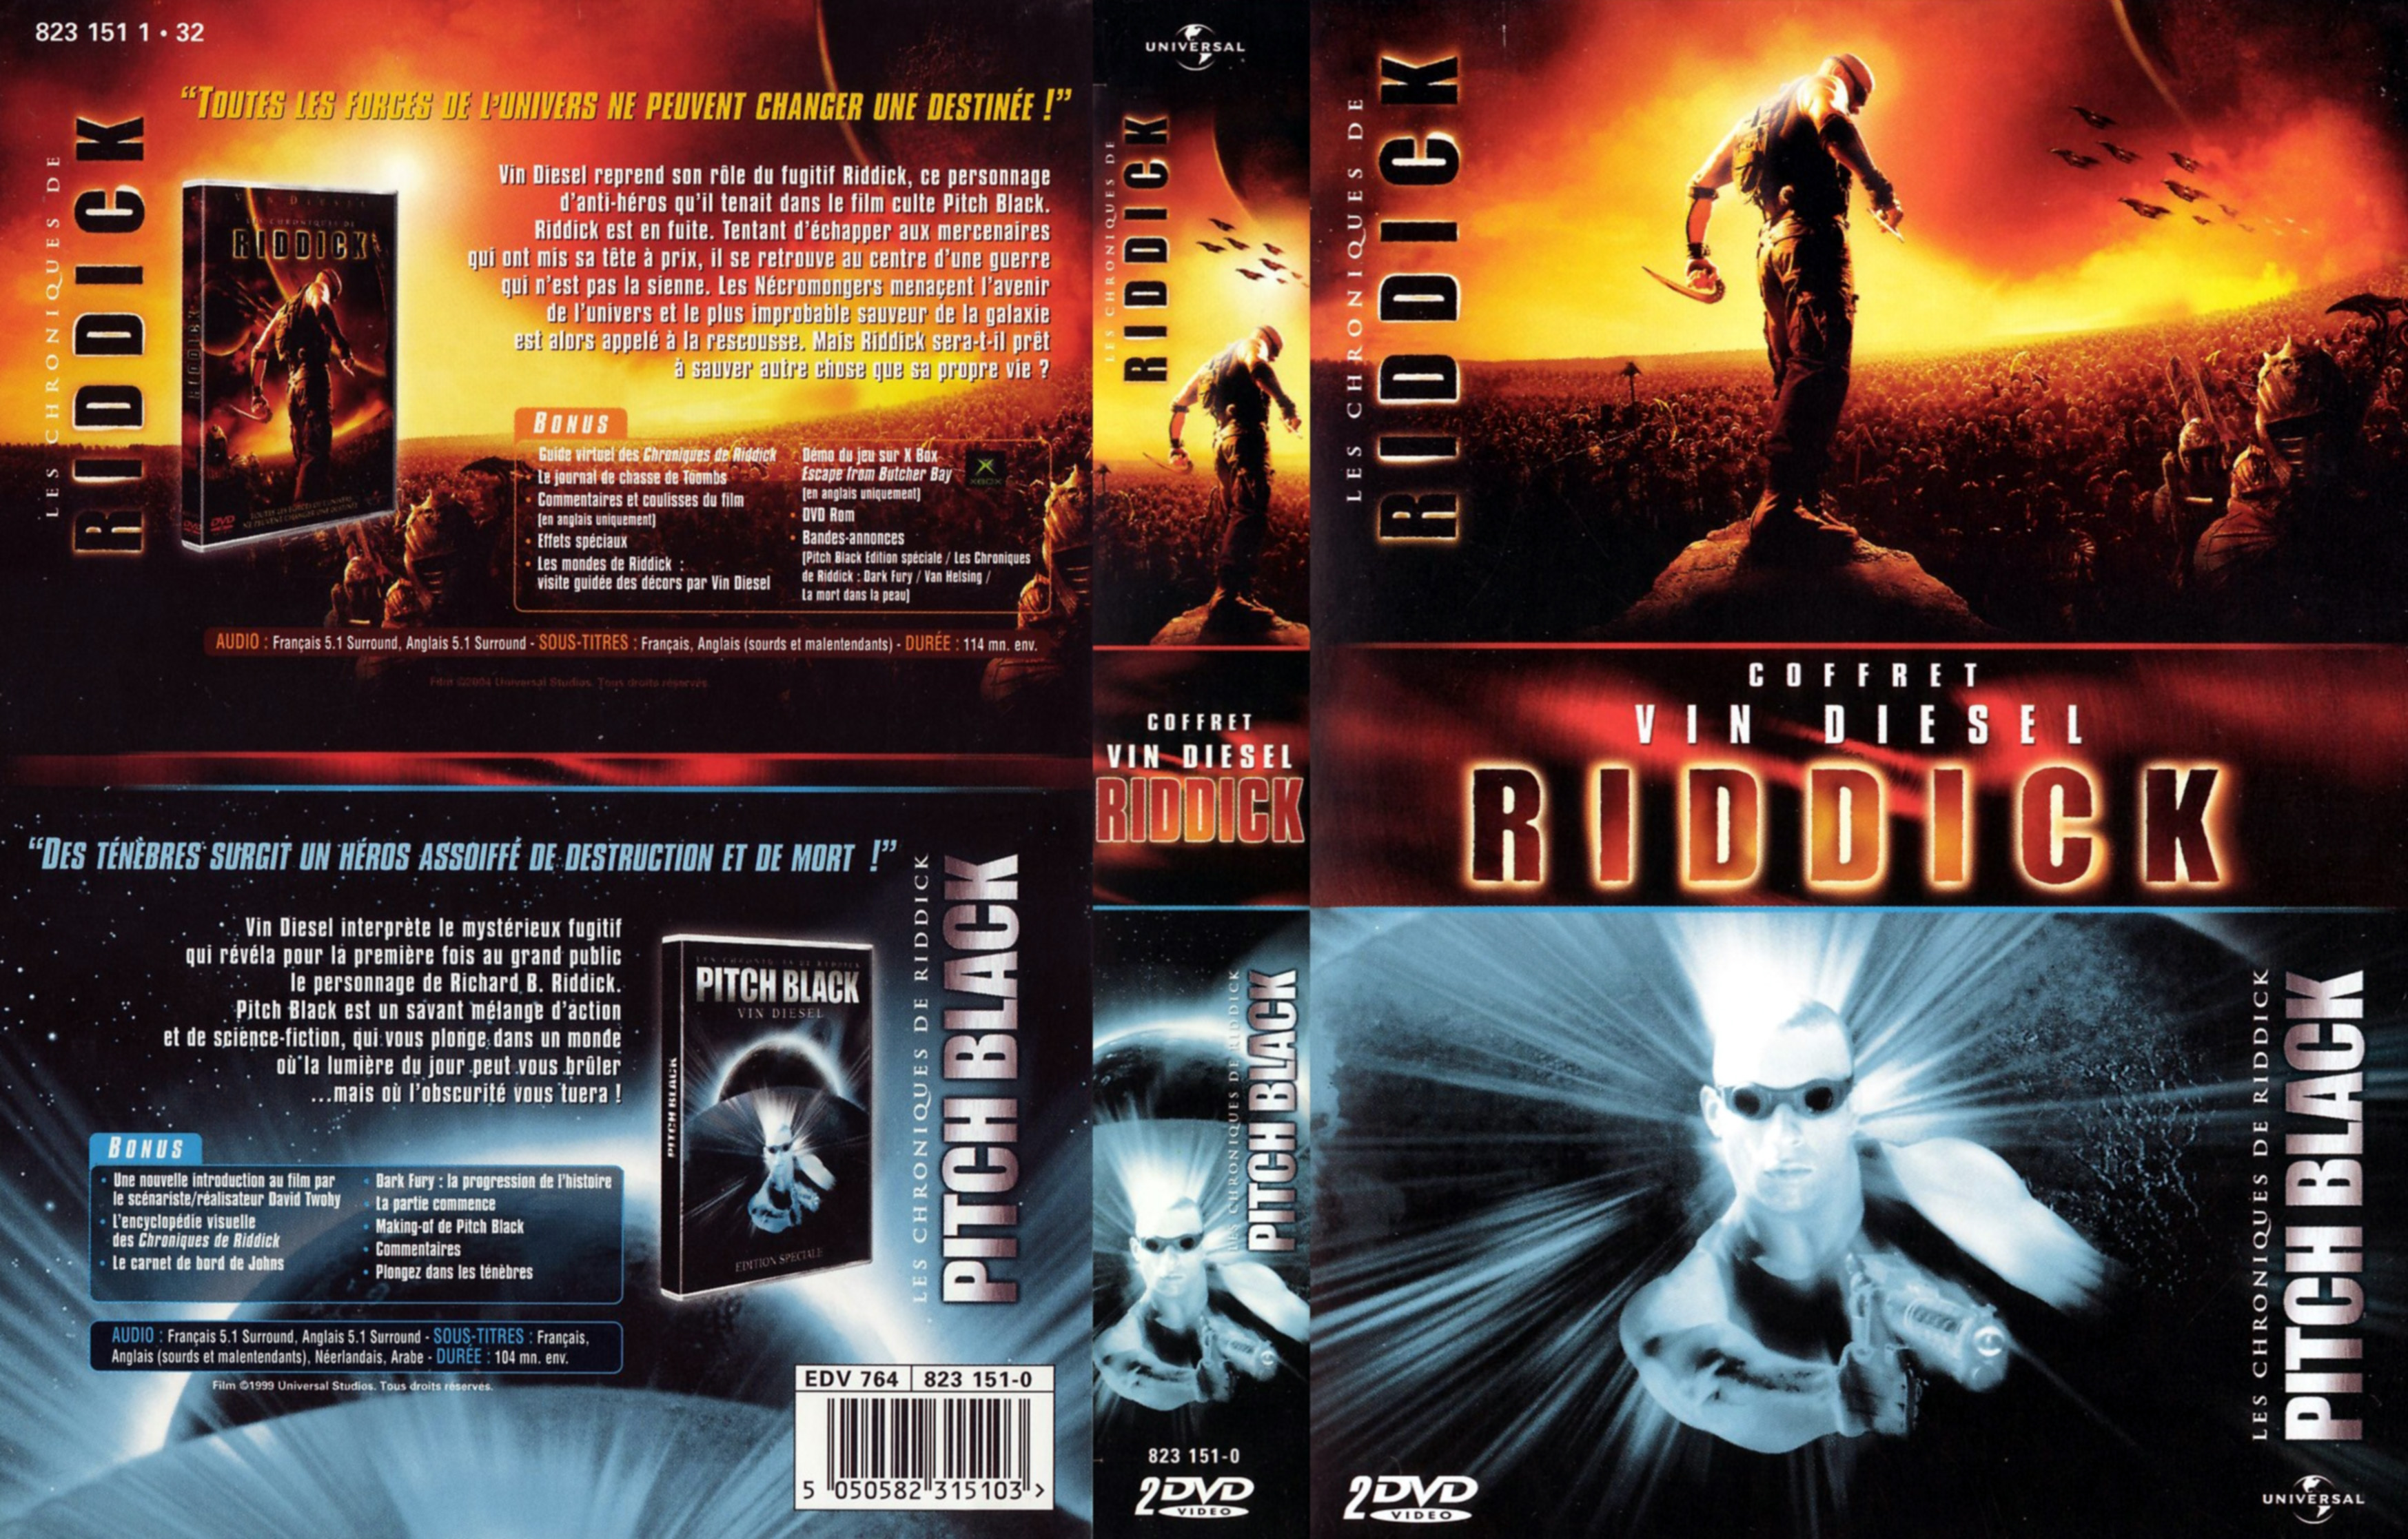 Jaquette DVD Pitch black + les chroniques de riddick COFFRET